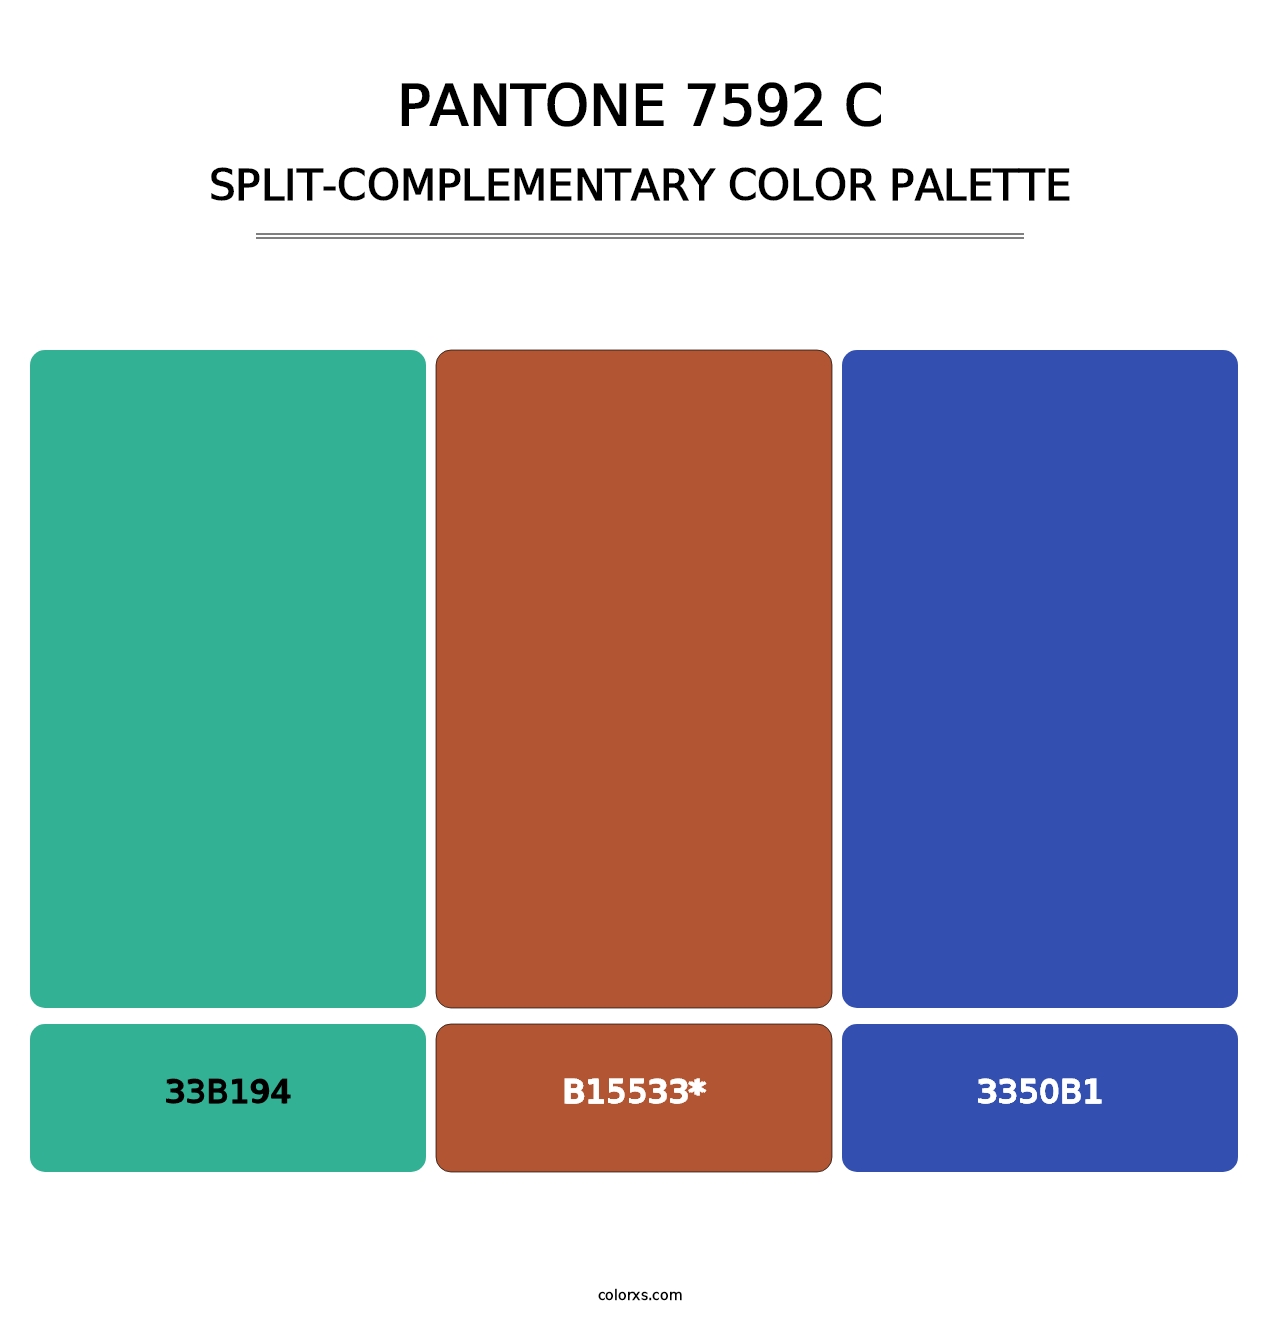 PANTONE 7592 C - Split-Complementary Color Palette